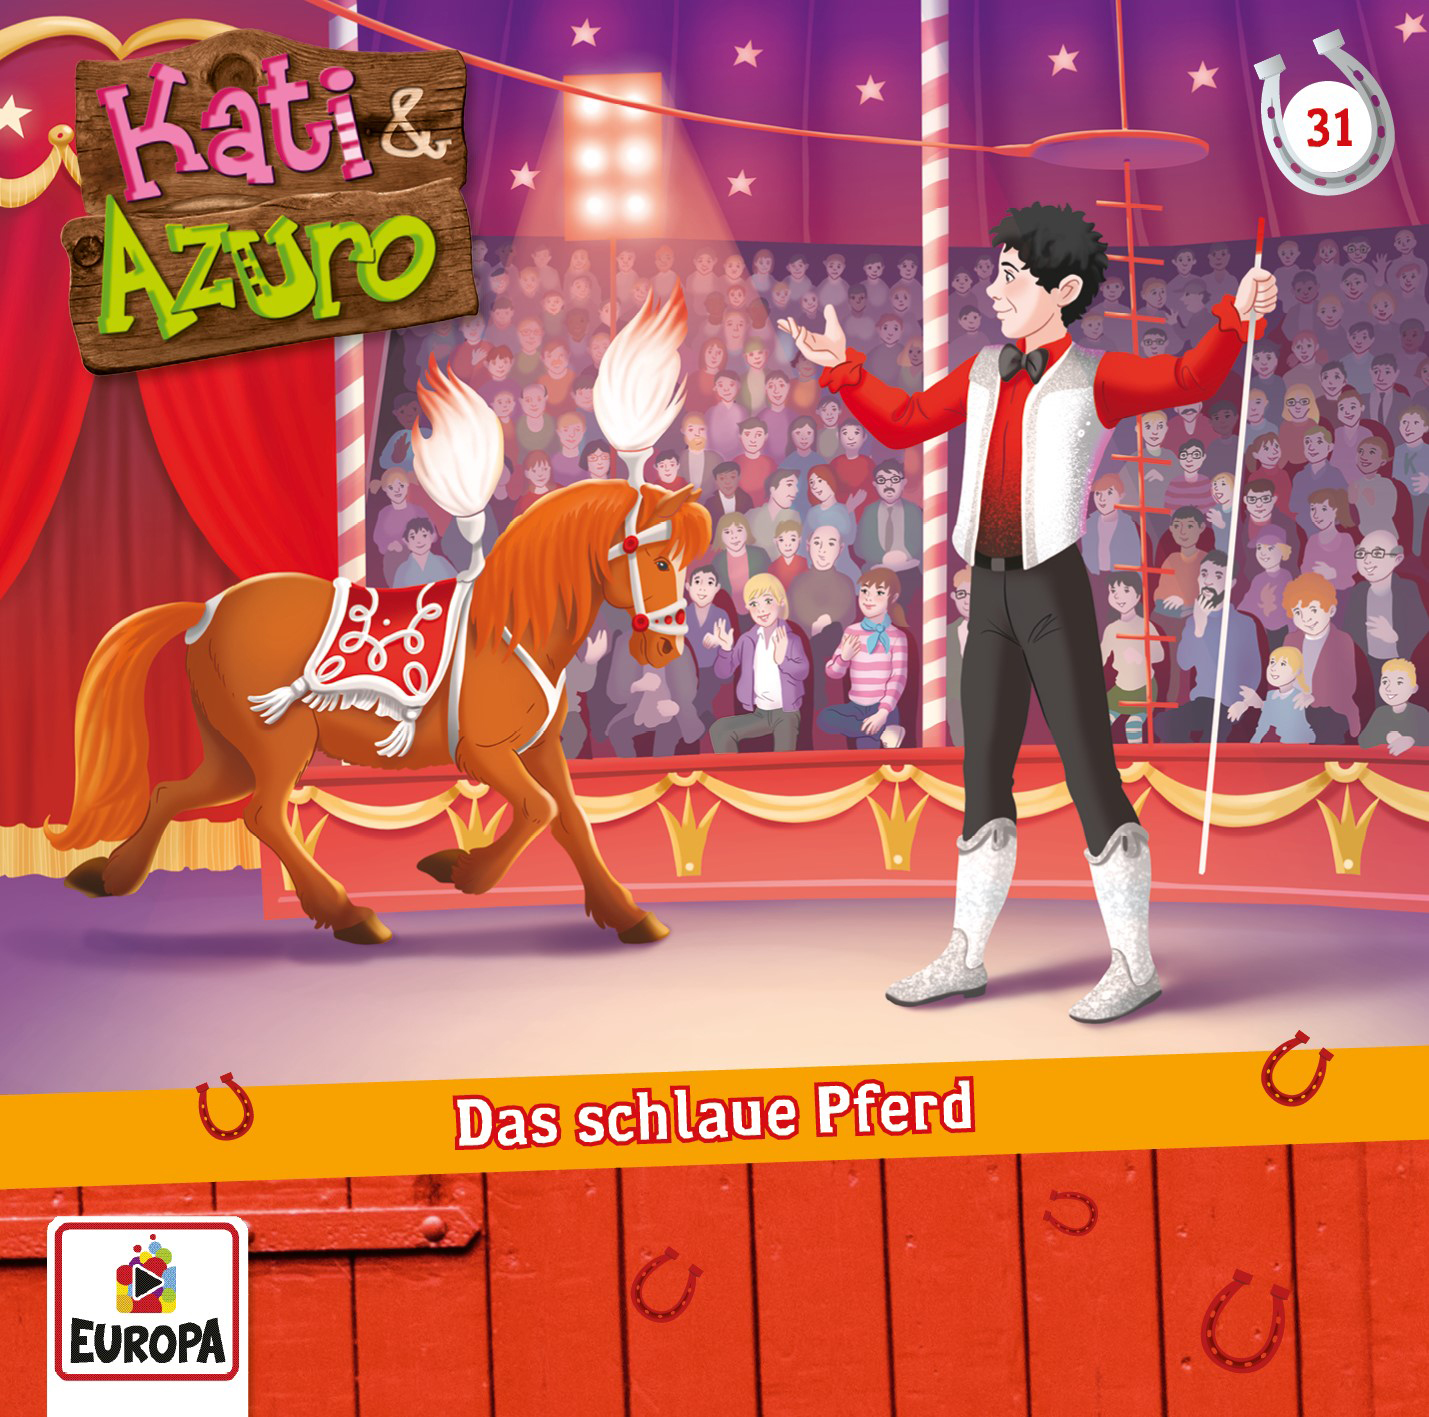 Kati & Azuro - Das schlaue Pferd